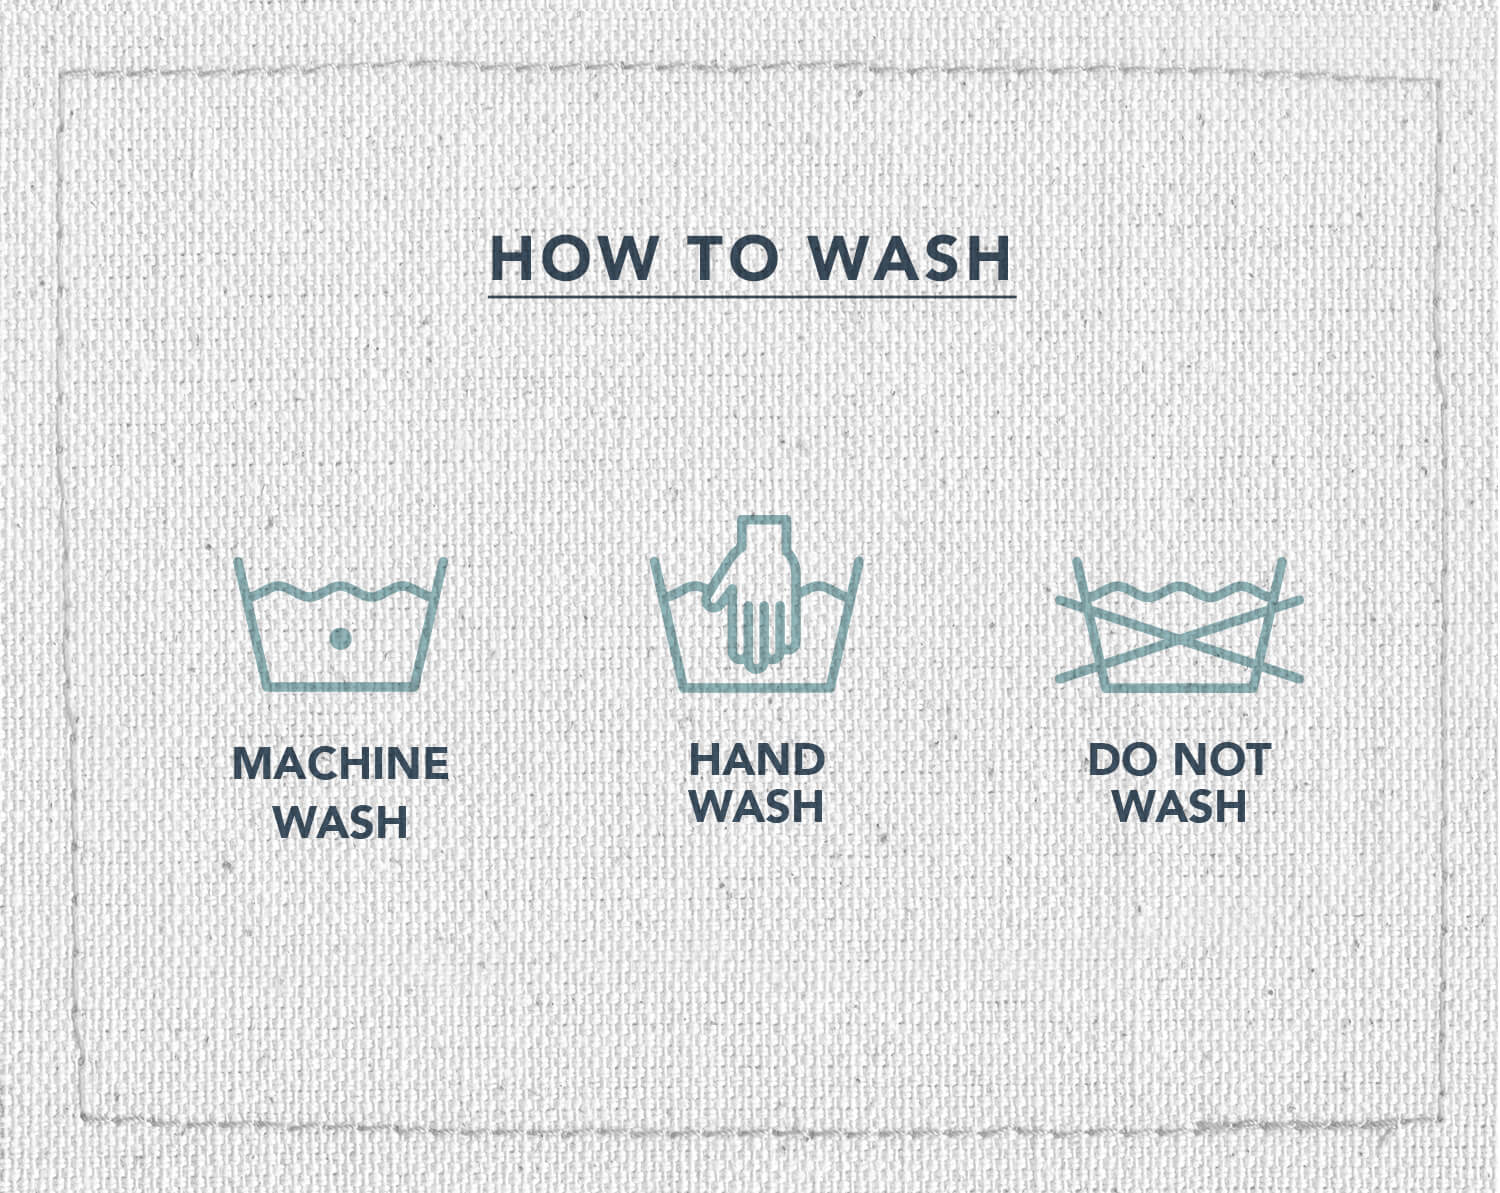 Une infographie de trois symboles d'entretien du tissu, indiquant quel symbole signifie lavage en machine, lavage à la main et ne pas laver